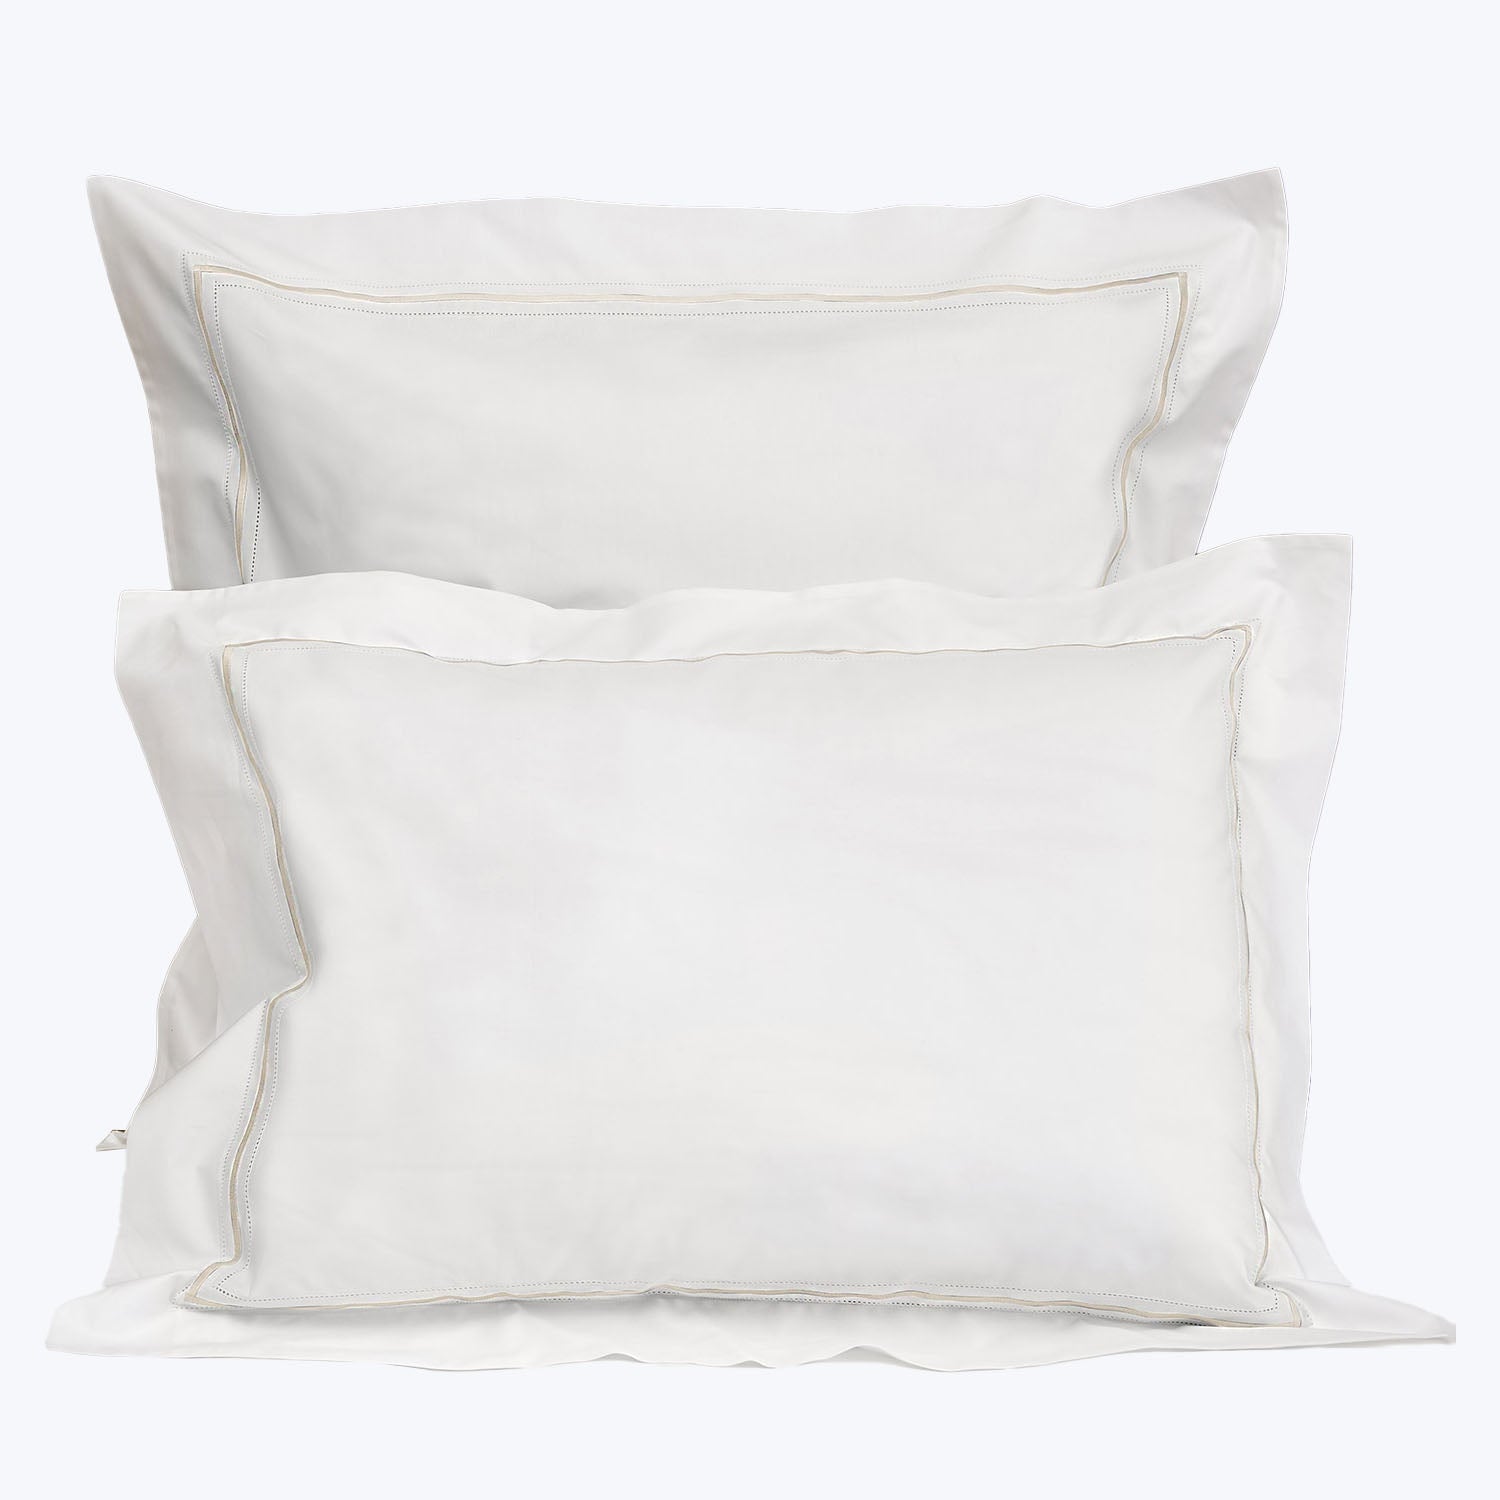 Gramercy Duvet & Shams, White/Ivory Pillow Sham / Standard